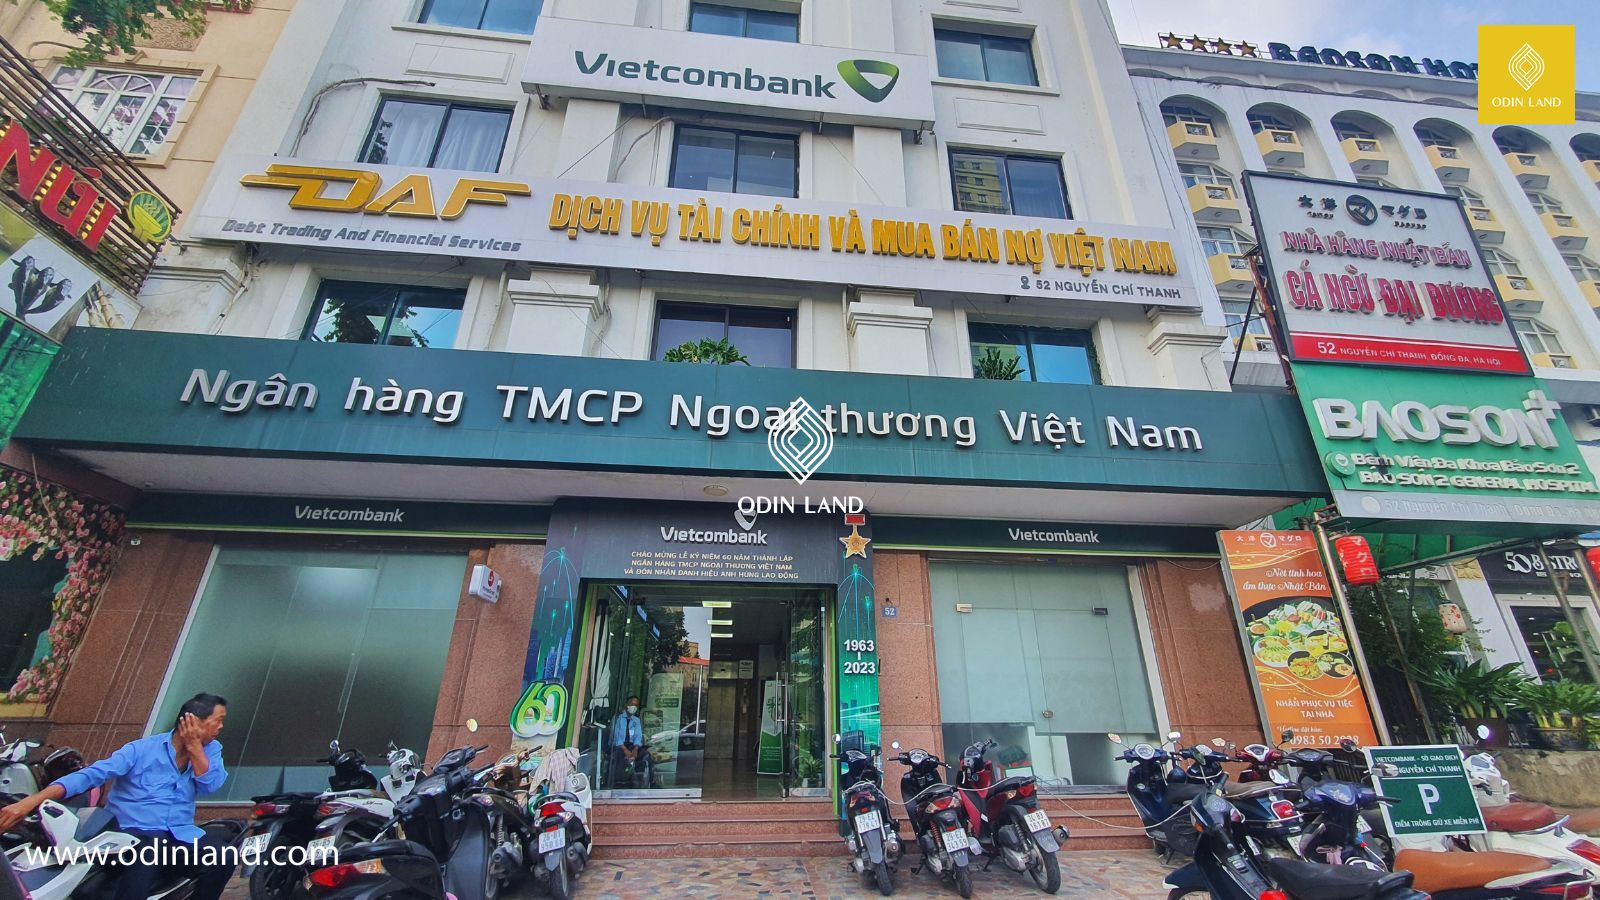 Tòa nhà 52 Nguyễn Chí Thanh